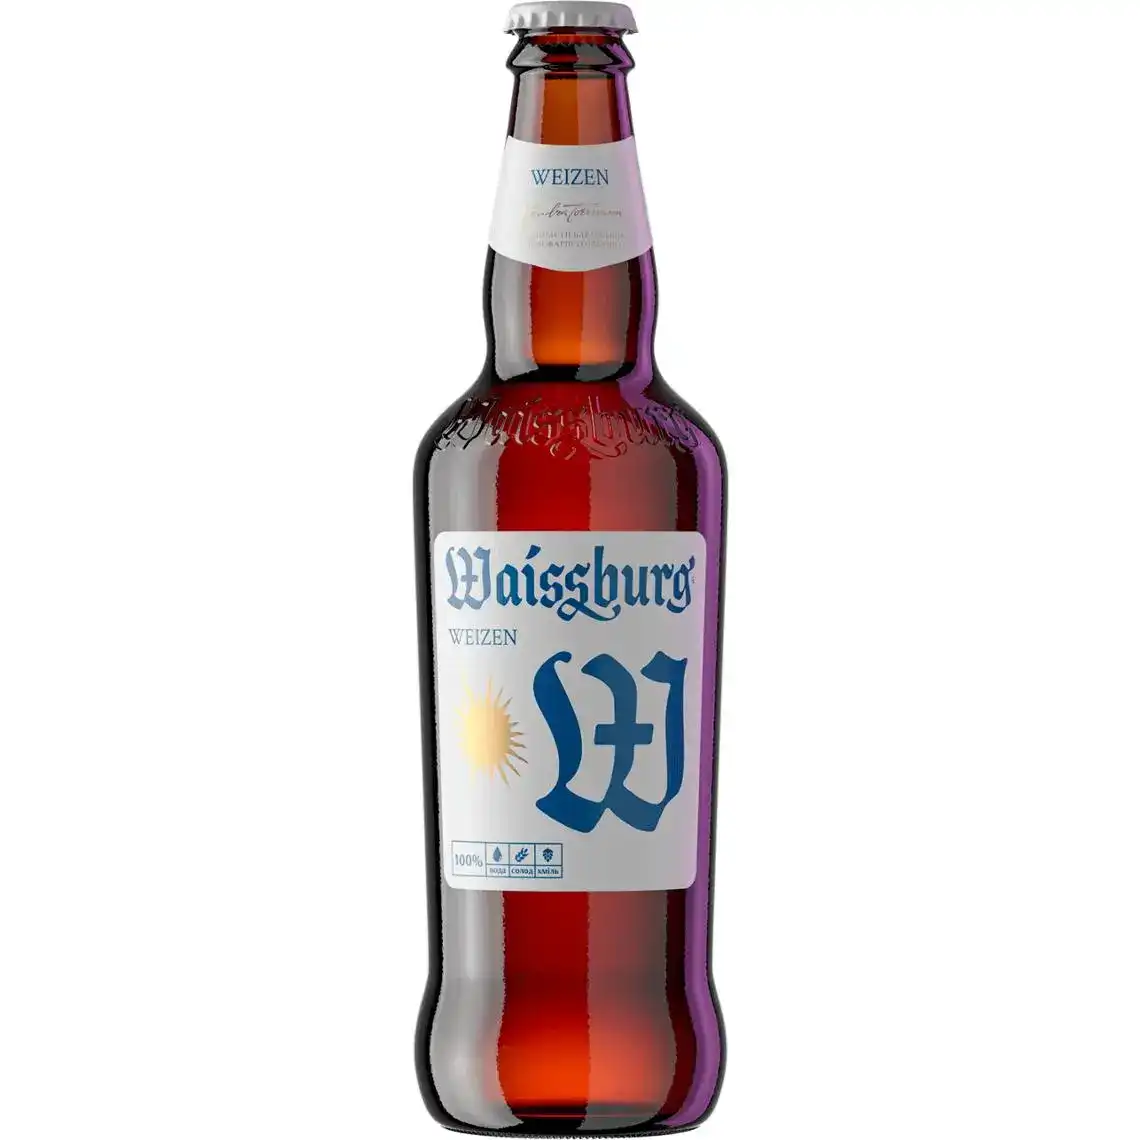 Фото 1 - Пиво Уманьпиво Weizen Waissburg світле нефільтроване 4.7% 500 мл